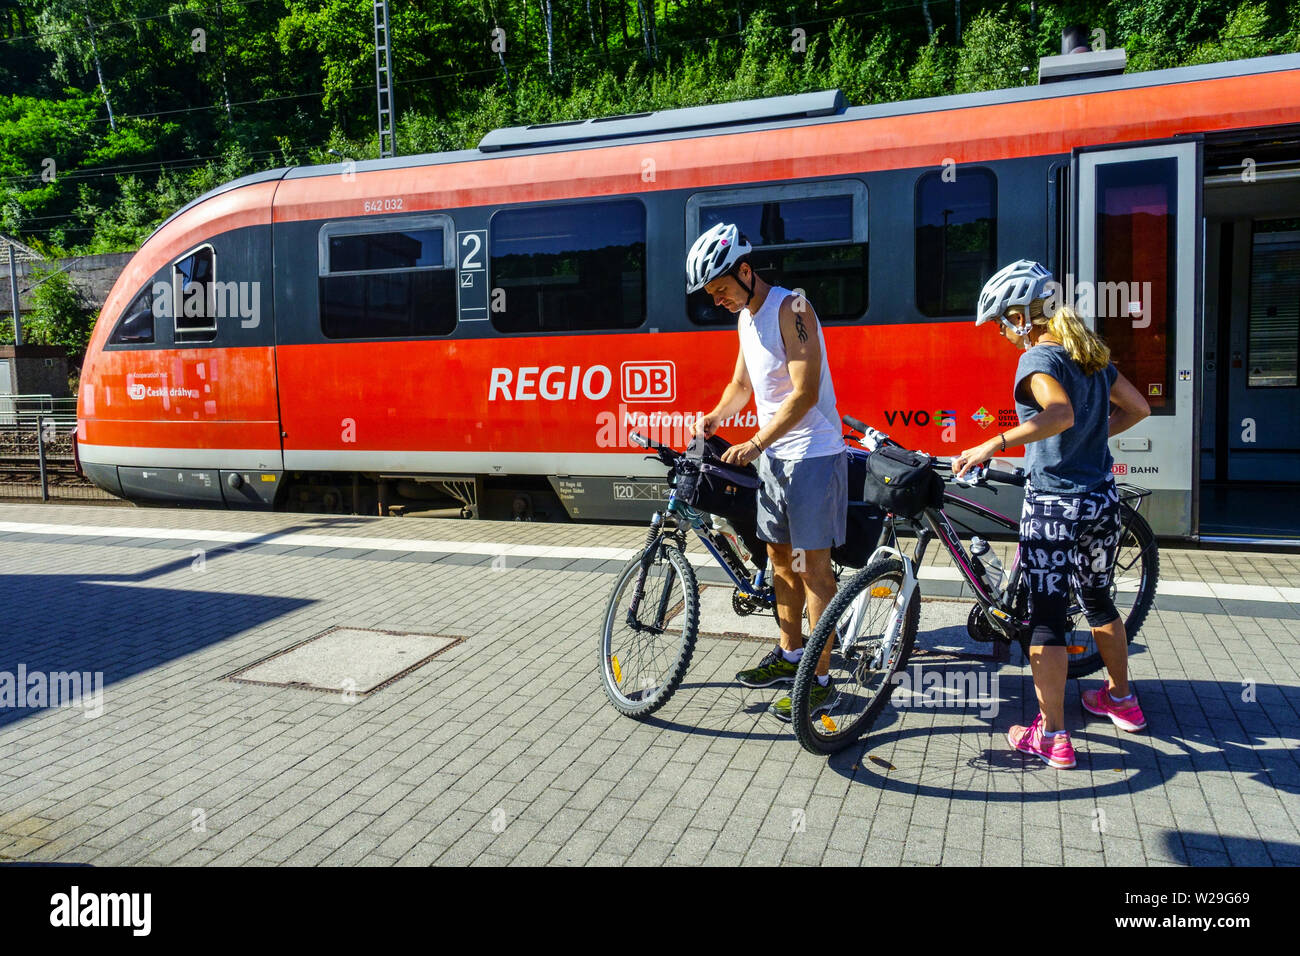 Deux motards sur la plate-forme, Allemagne chemins de fer, Deutsche Bahn VVO, train régional Saxe Allemagne train vélo Vallée du train Elbe train commuter Banque D'Images